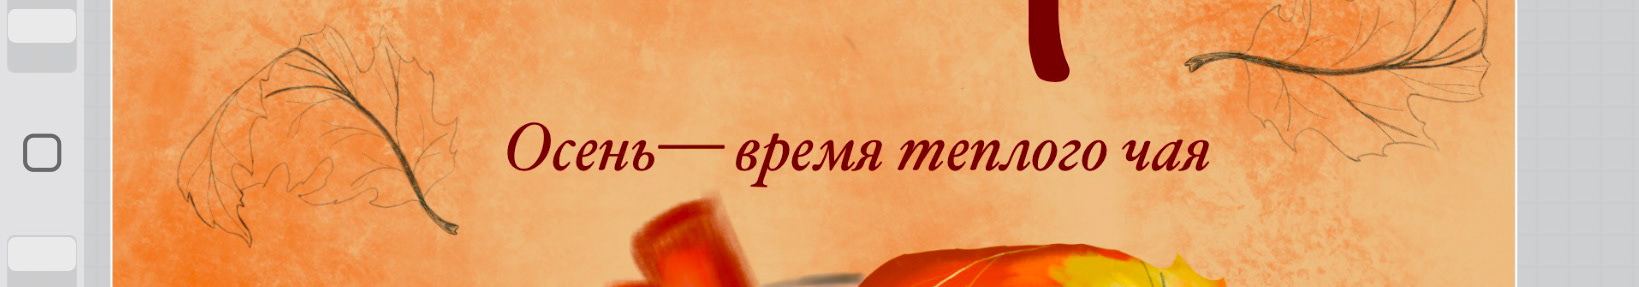 Banner de perfil de Екатерина Макарова